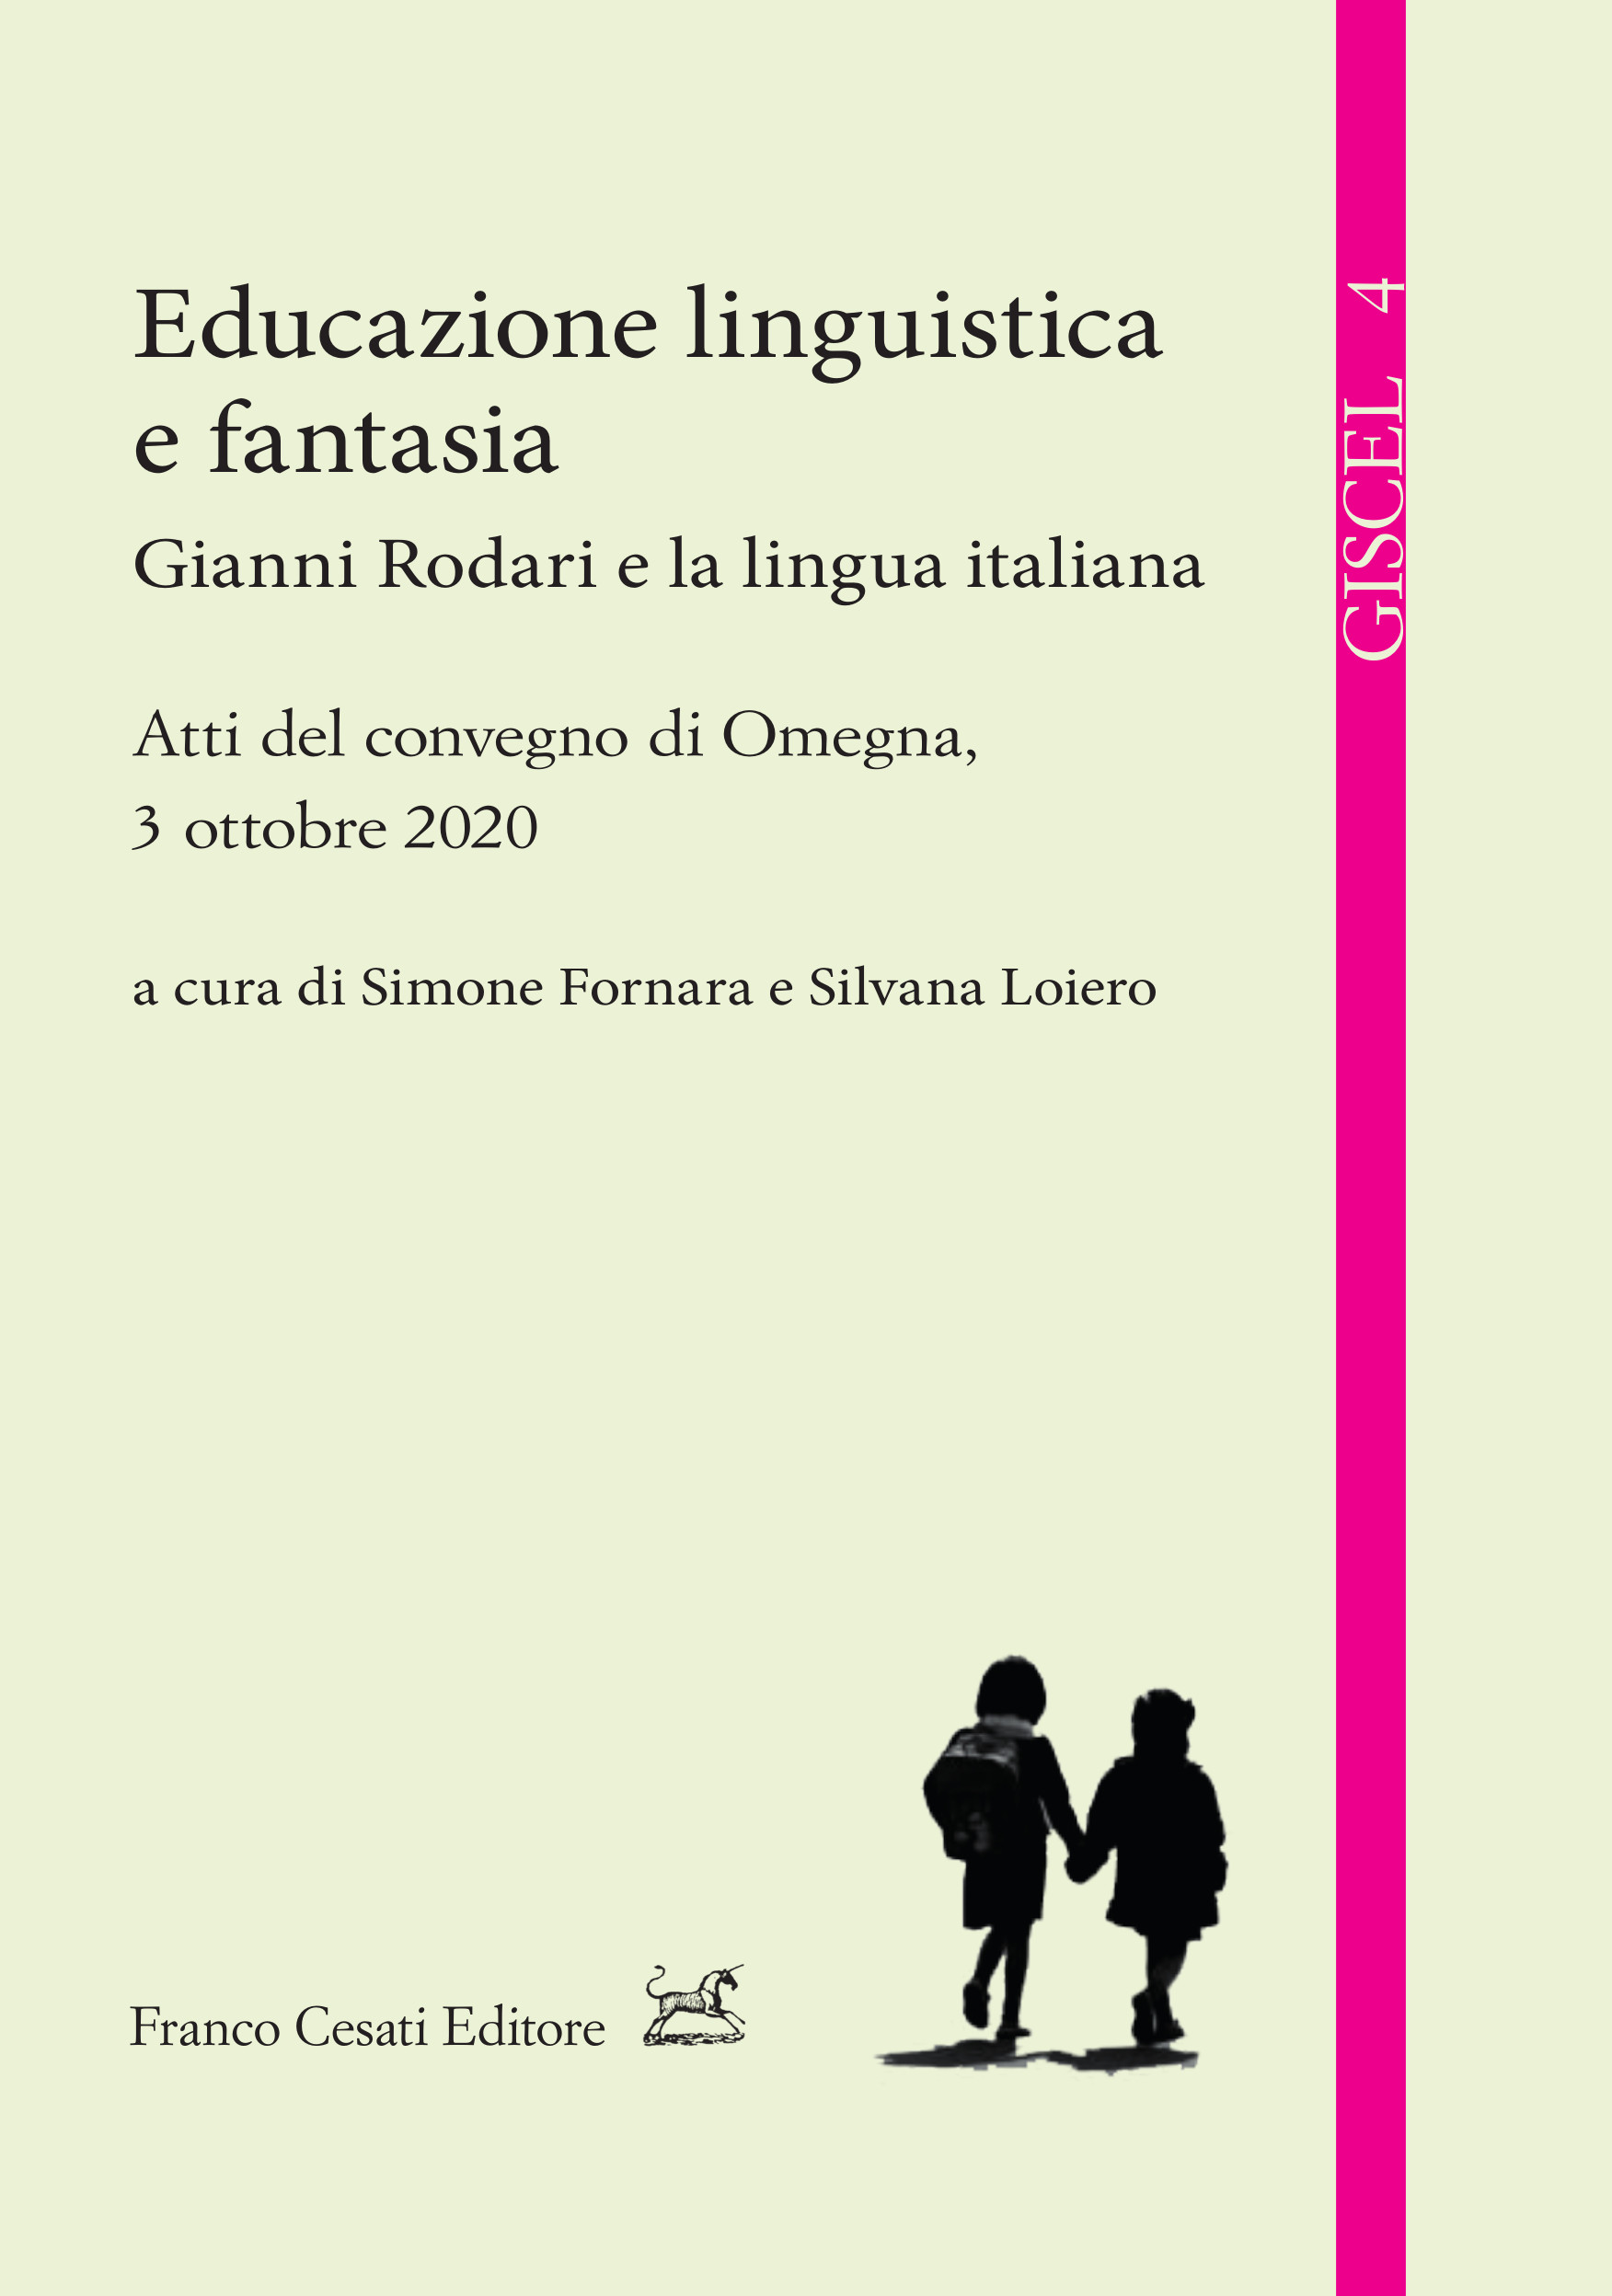 La cucina italiana fra lingua, cultura e didattica - Franco Cesati Editore